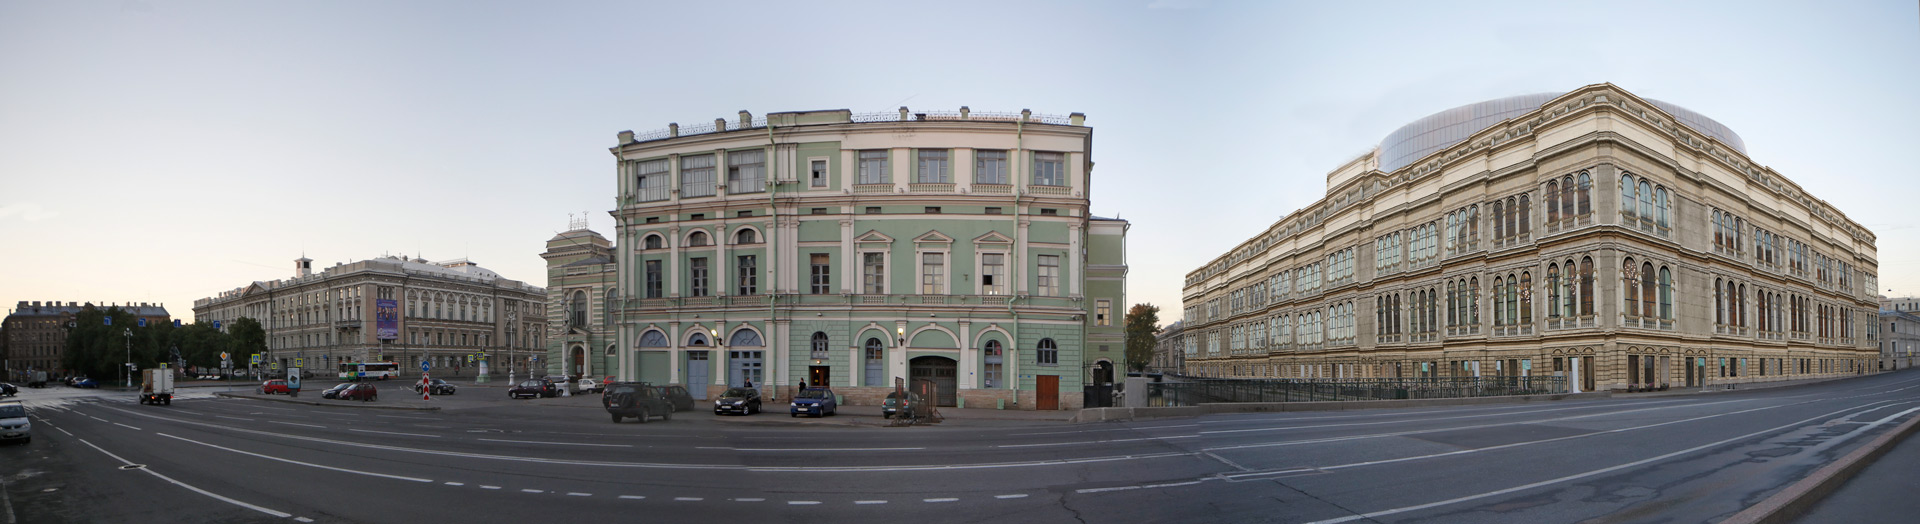 Театральная пл.  Санкт-Петербург, Реконструкция фасада Мариинки 2